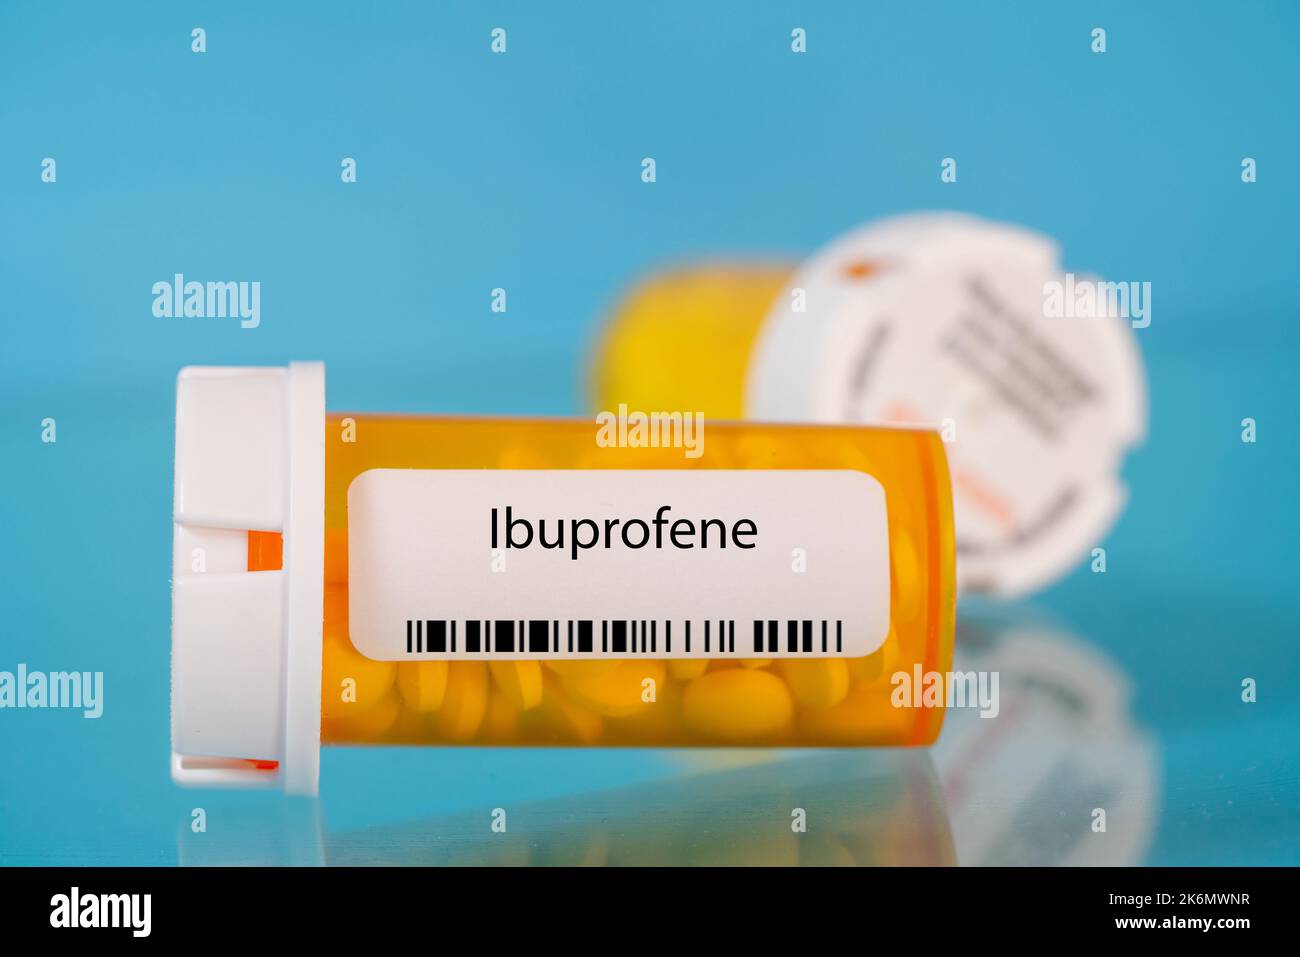 Ibuprofen pill Banque de photographies et d'images à haute ...